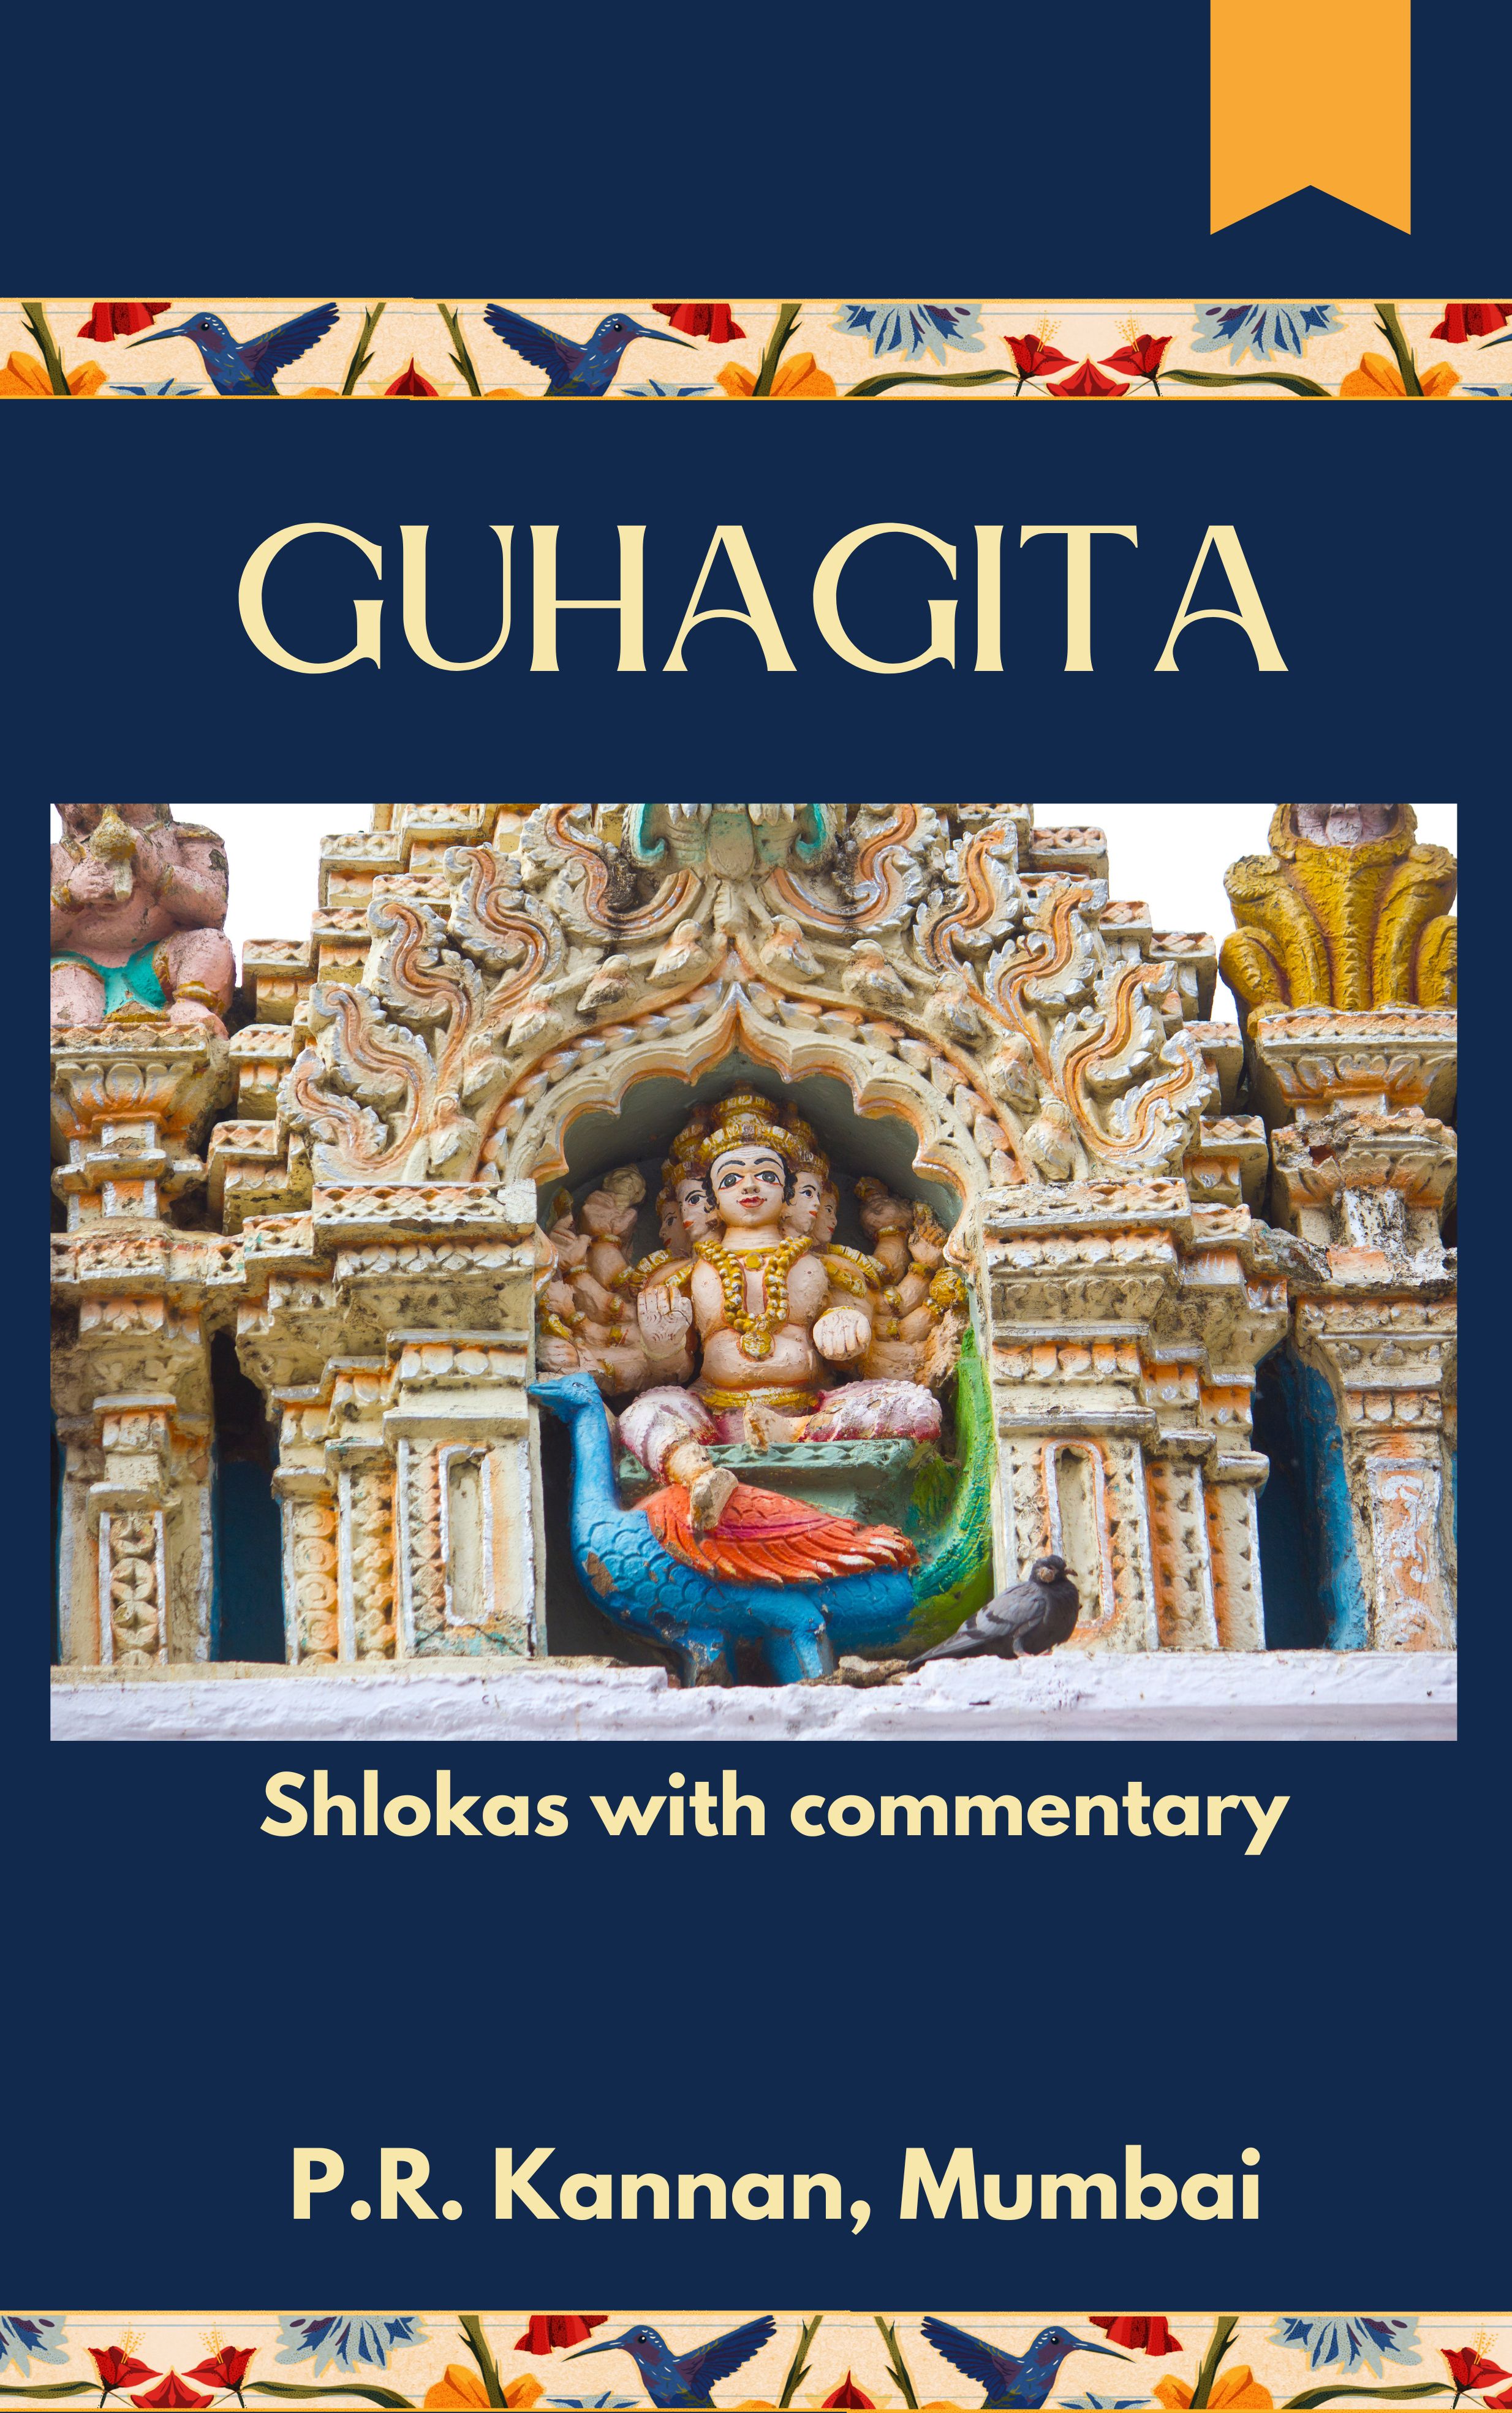 GUHAGITA- Shlokas with commentary